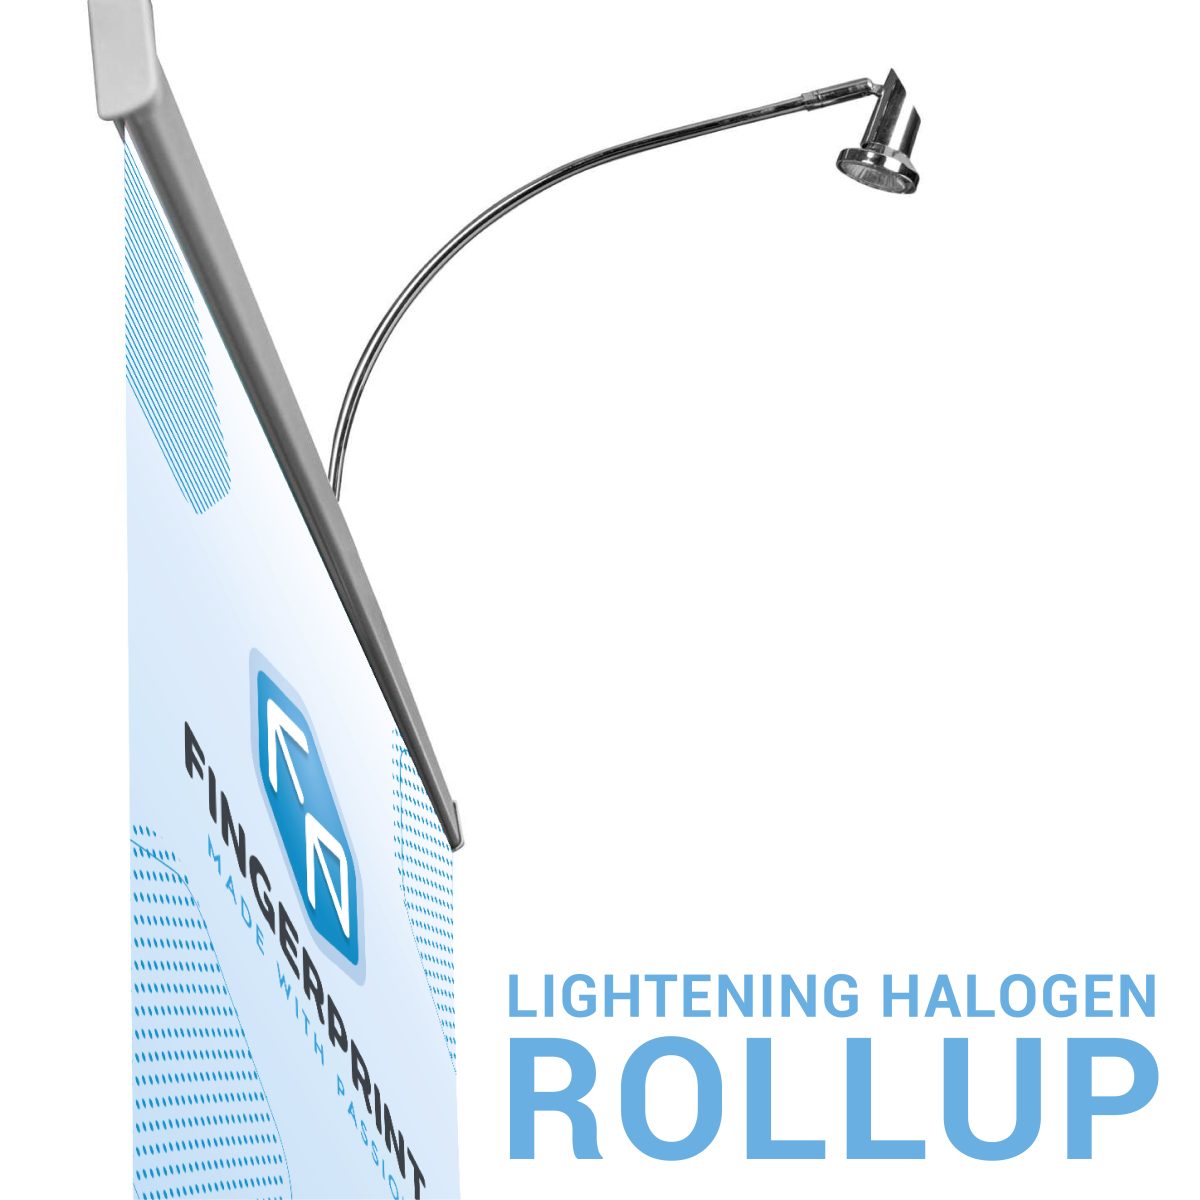 Roll Up reklaminio stendo Halogeninis šviestuvas